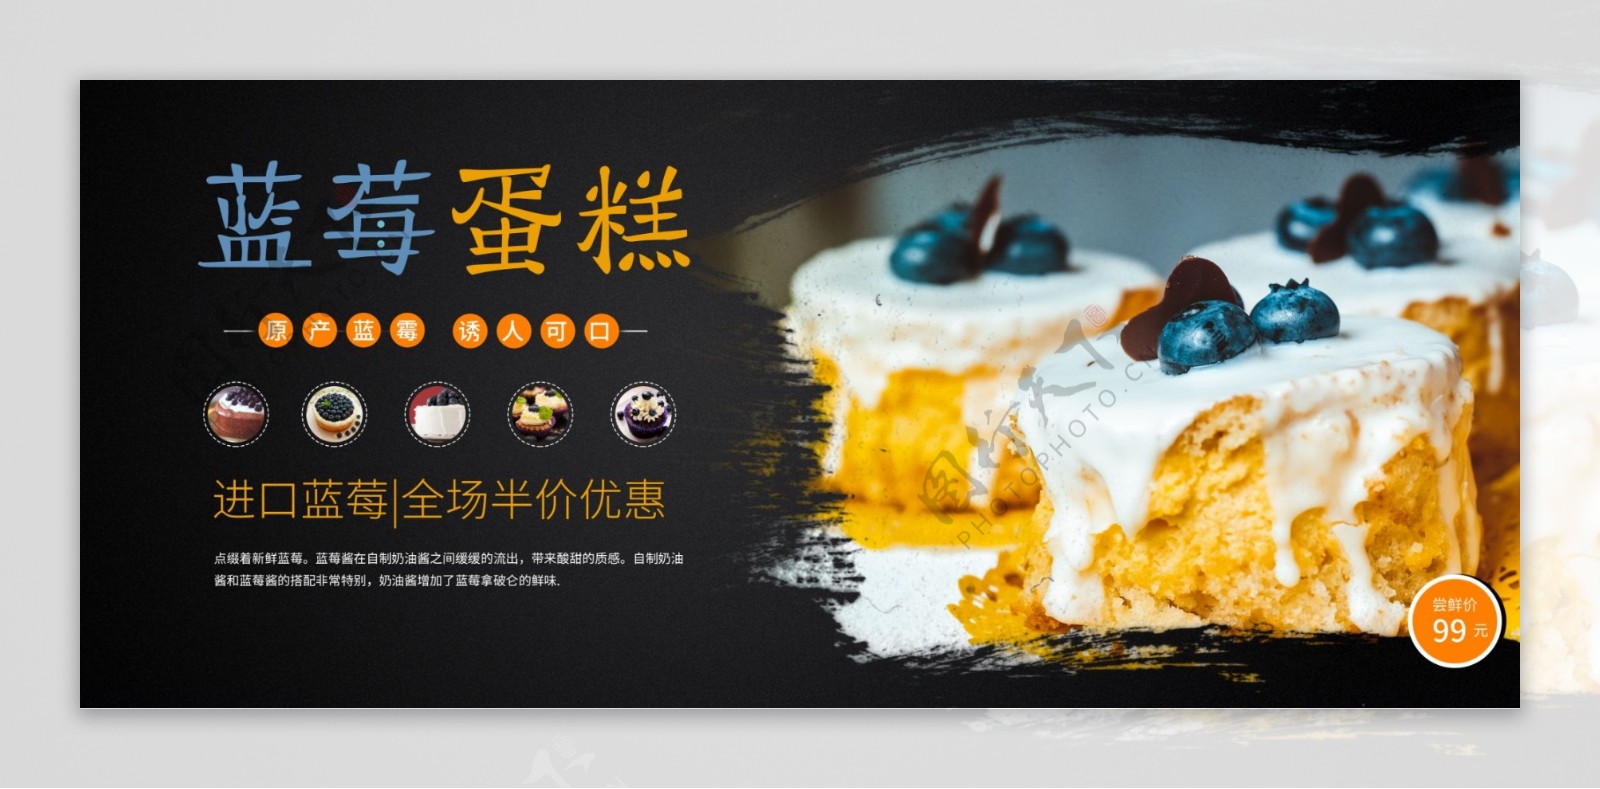 蓝莓蛋糕新鲜美味美食促销宣传展板